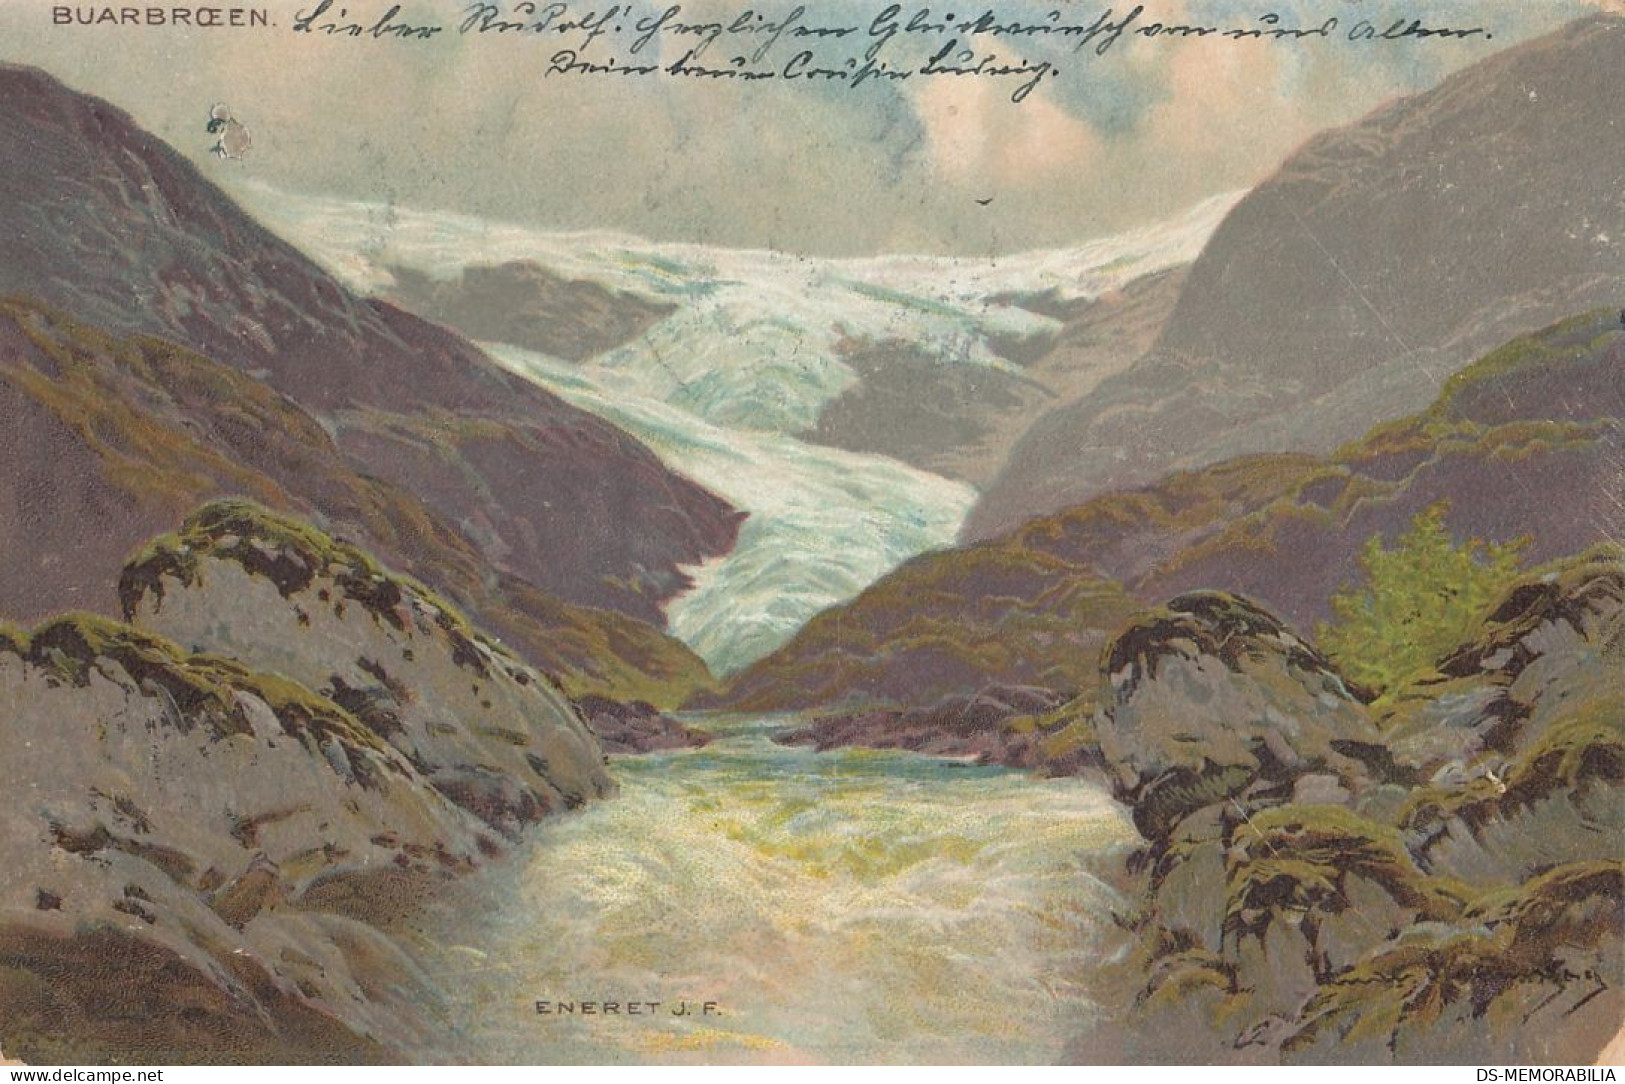 Buarbroen 1903 - Norway